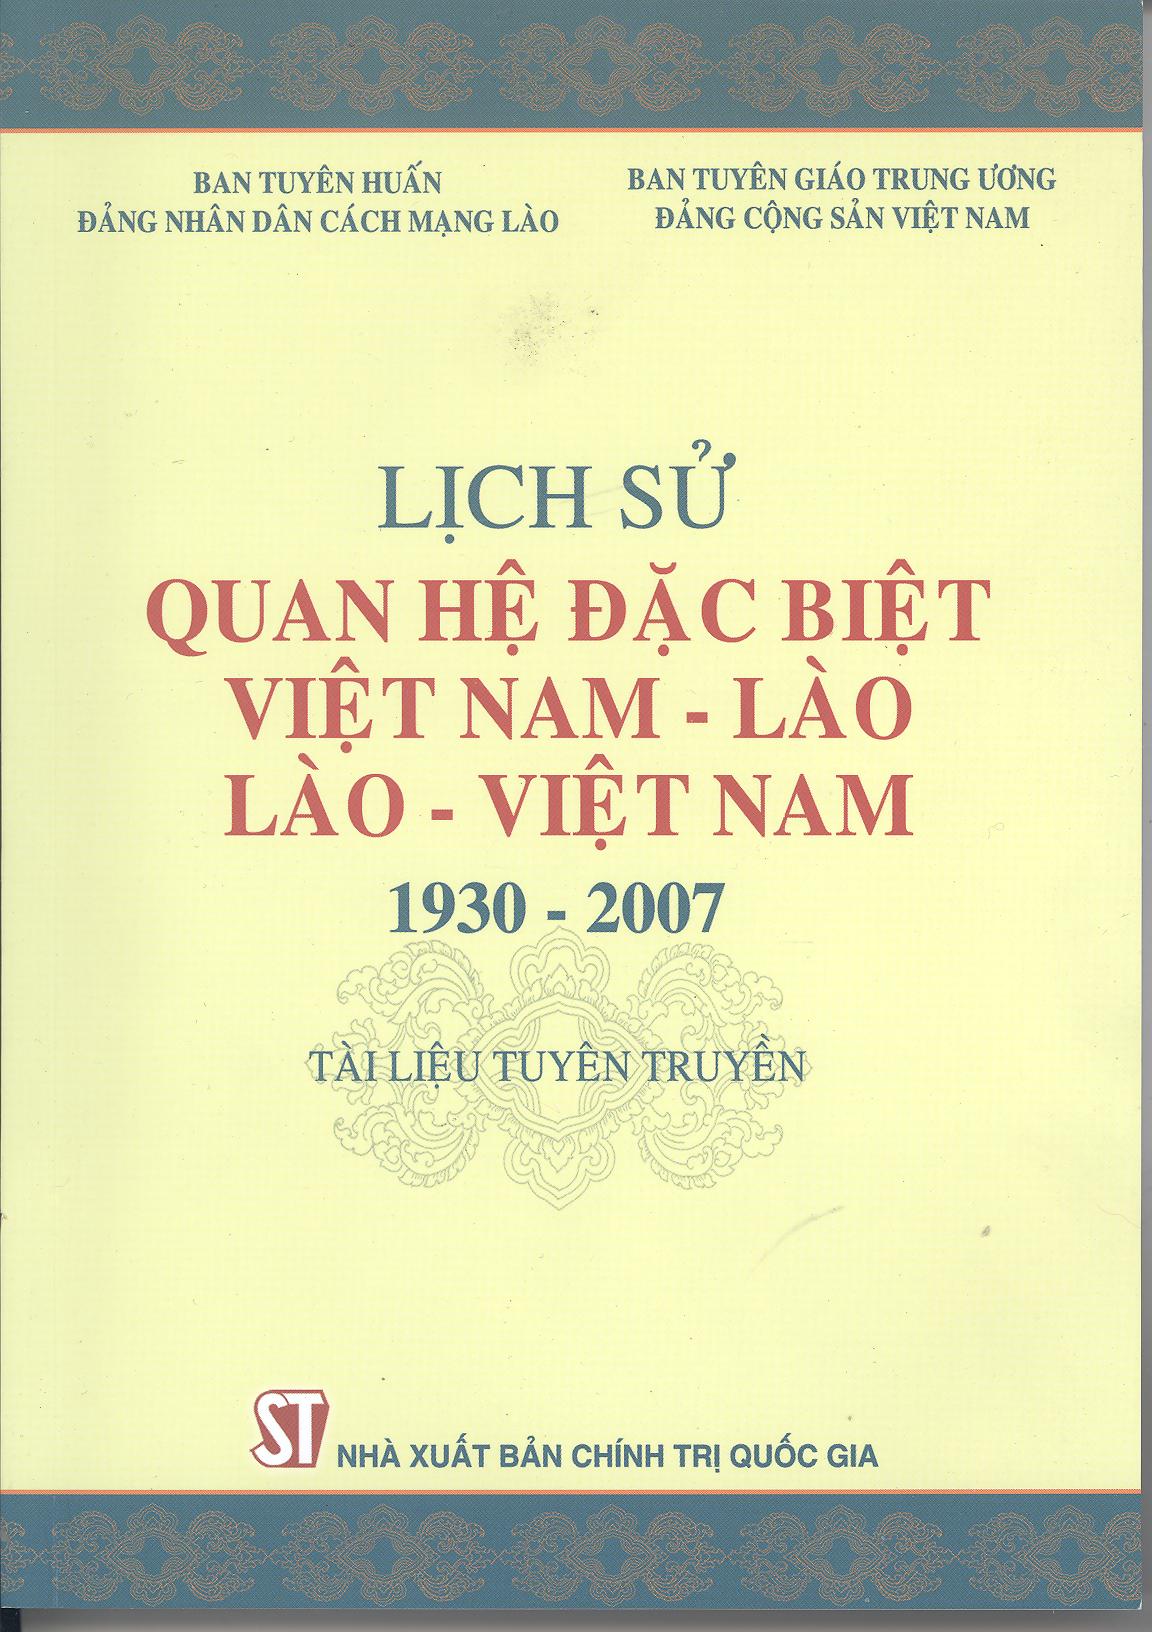 Lịch sử quan hệ đặc biệt Việt Nam – Lào, Lào – Việt Nam (1930-2007) – Tài liệu tuyên truyền